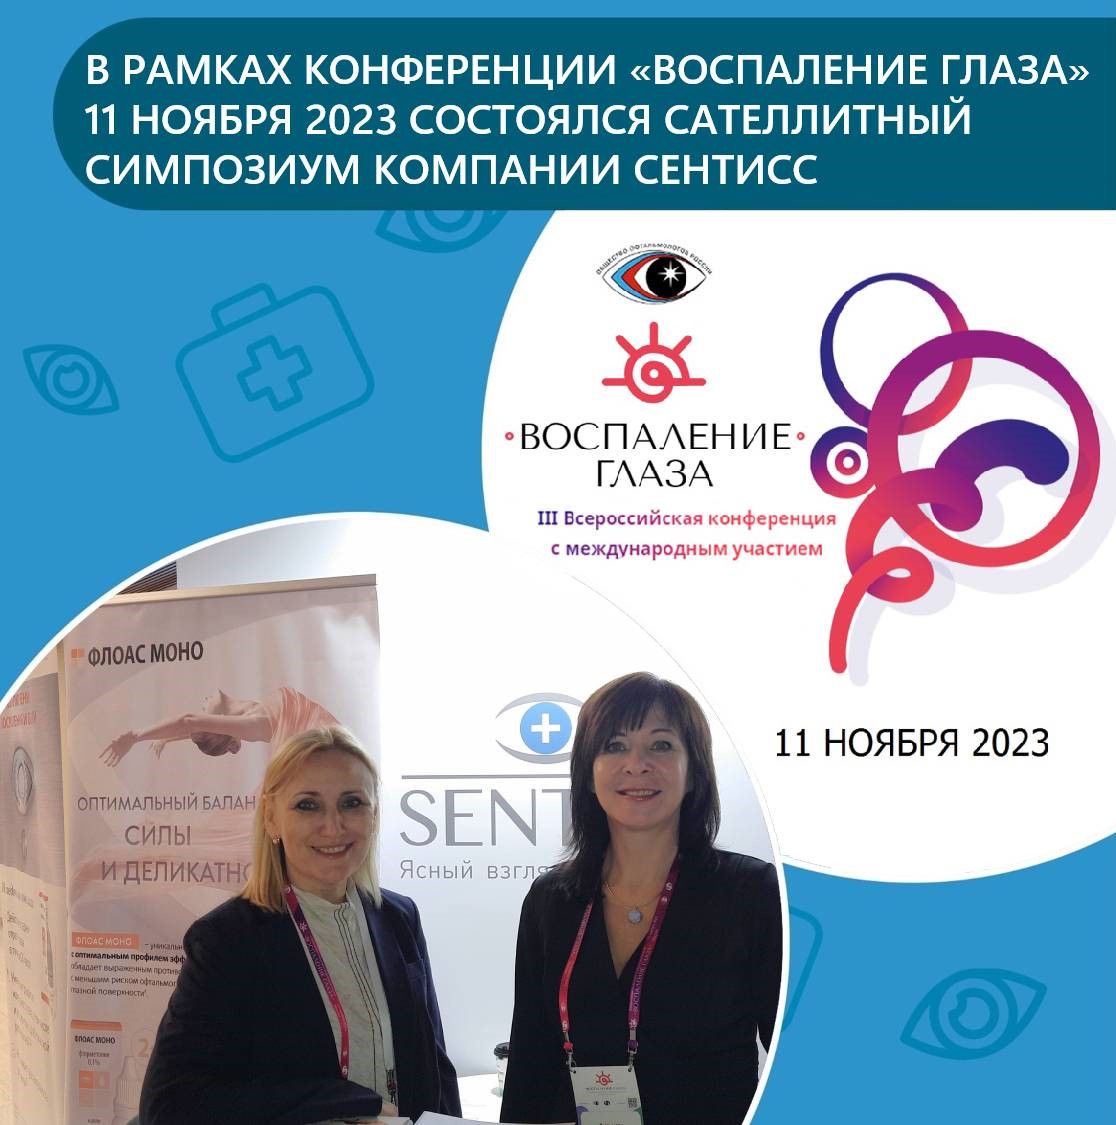 III Всероссийская конференция «Воспаление глаза» прошла в Москве 11 ноября 2023